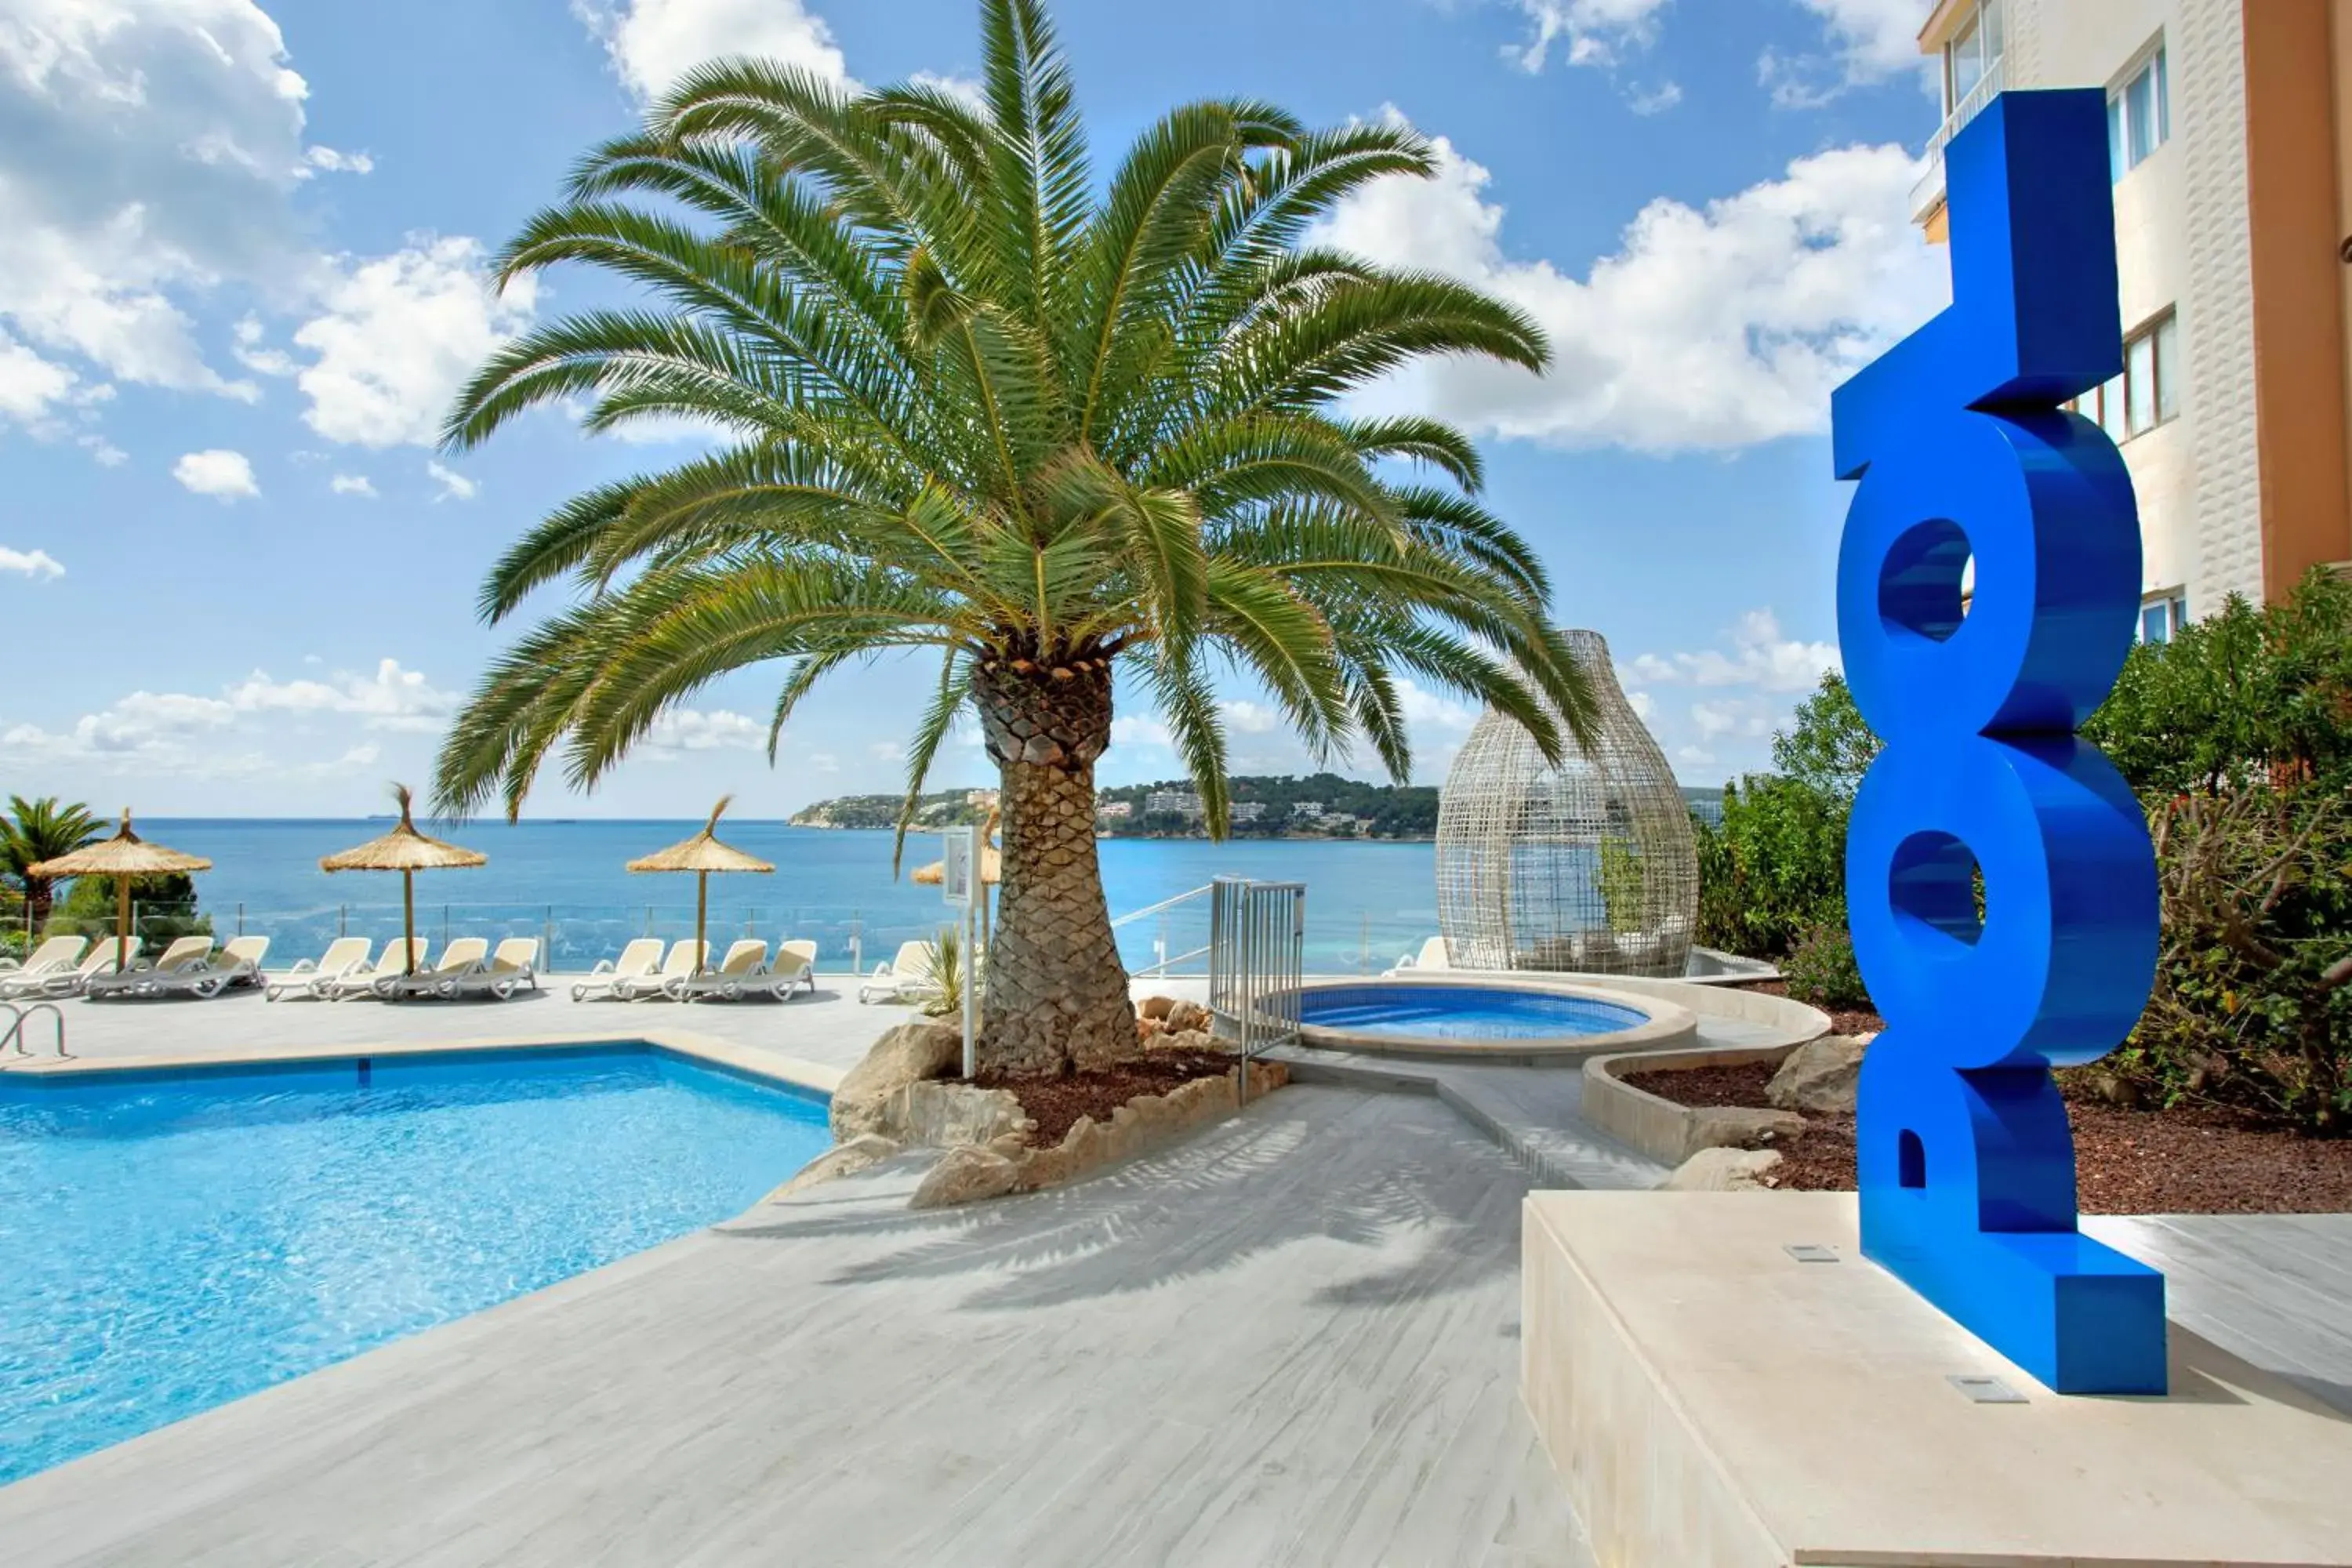 Property building, Swimming Pool in Bahia Principe Coral Playa